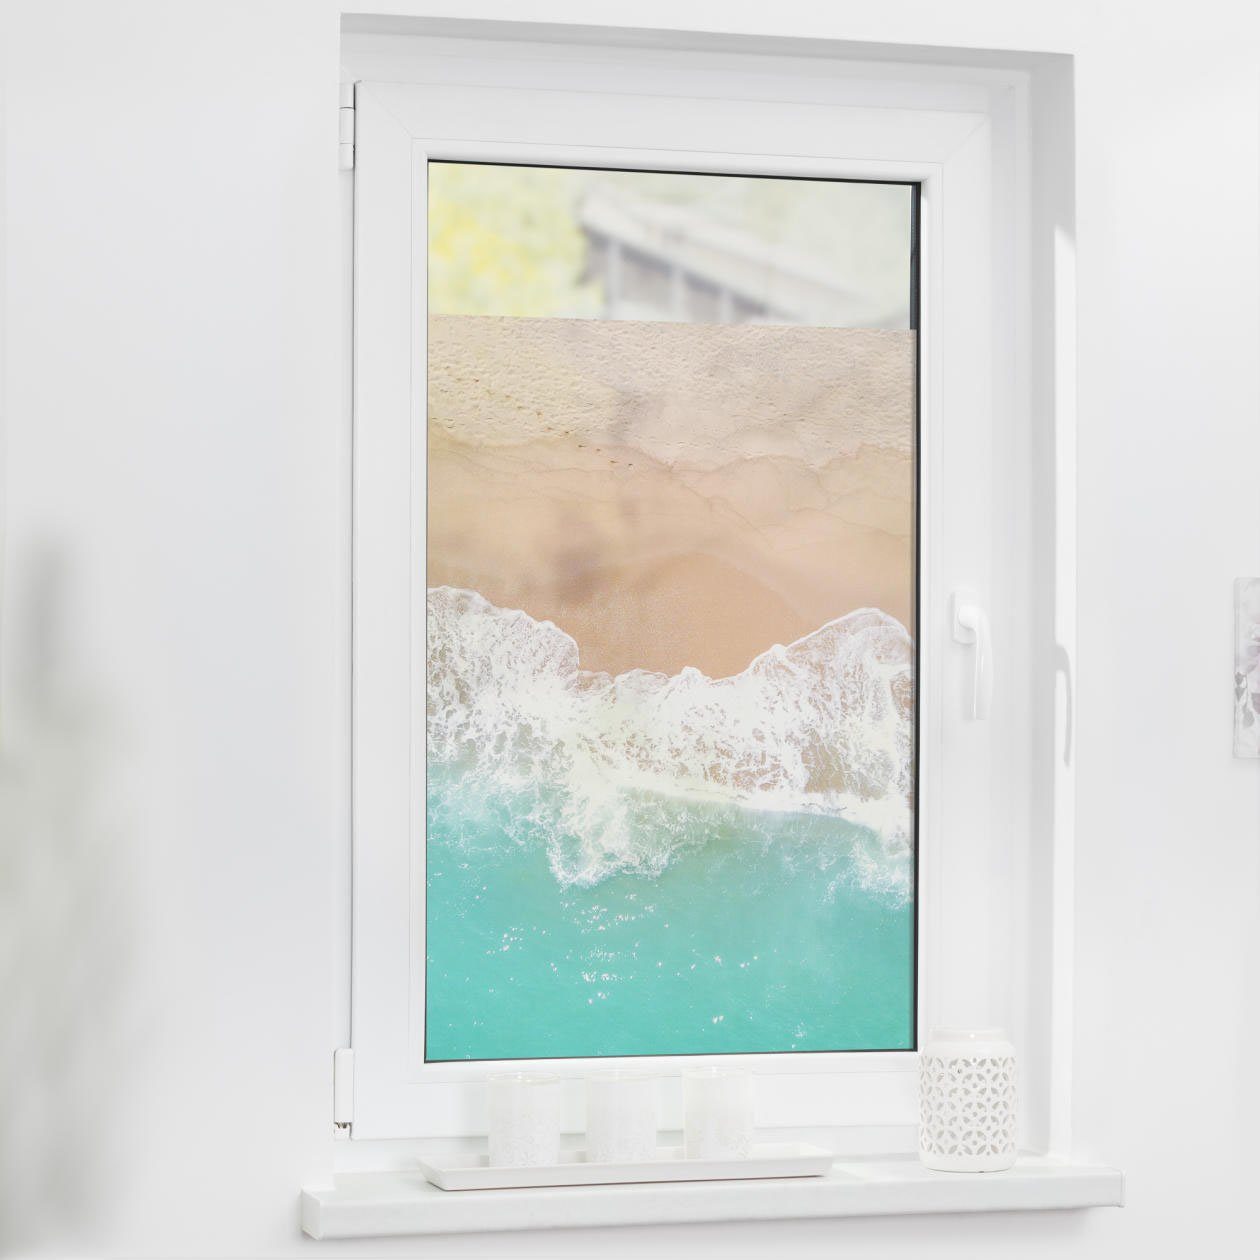 Fensterfolie Fensterfolie selbstklebend, Sichtschutz, The Beach - Türkis  Beige, LICHTBLICK ORIGINAL, blickdicht, glatt | Fensterfolien